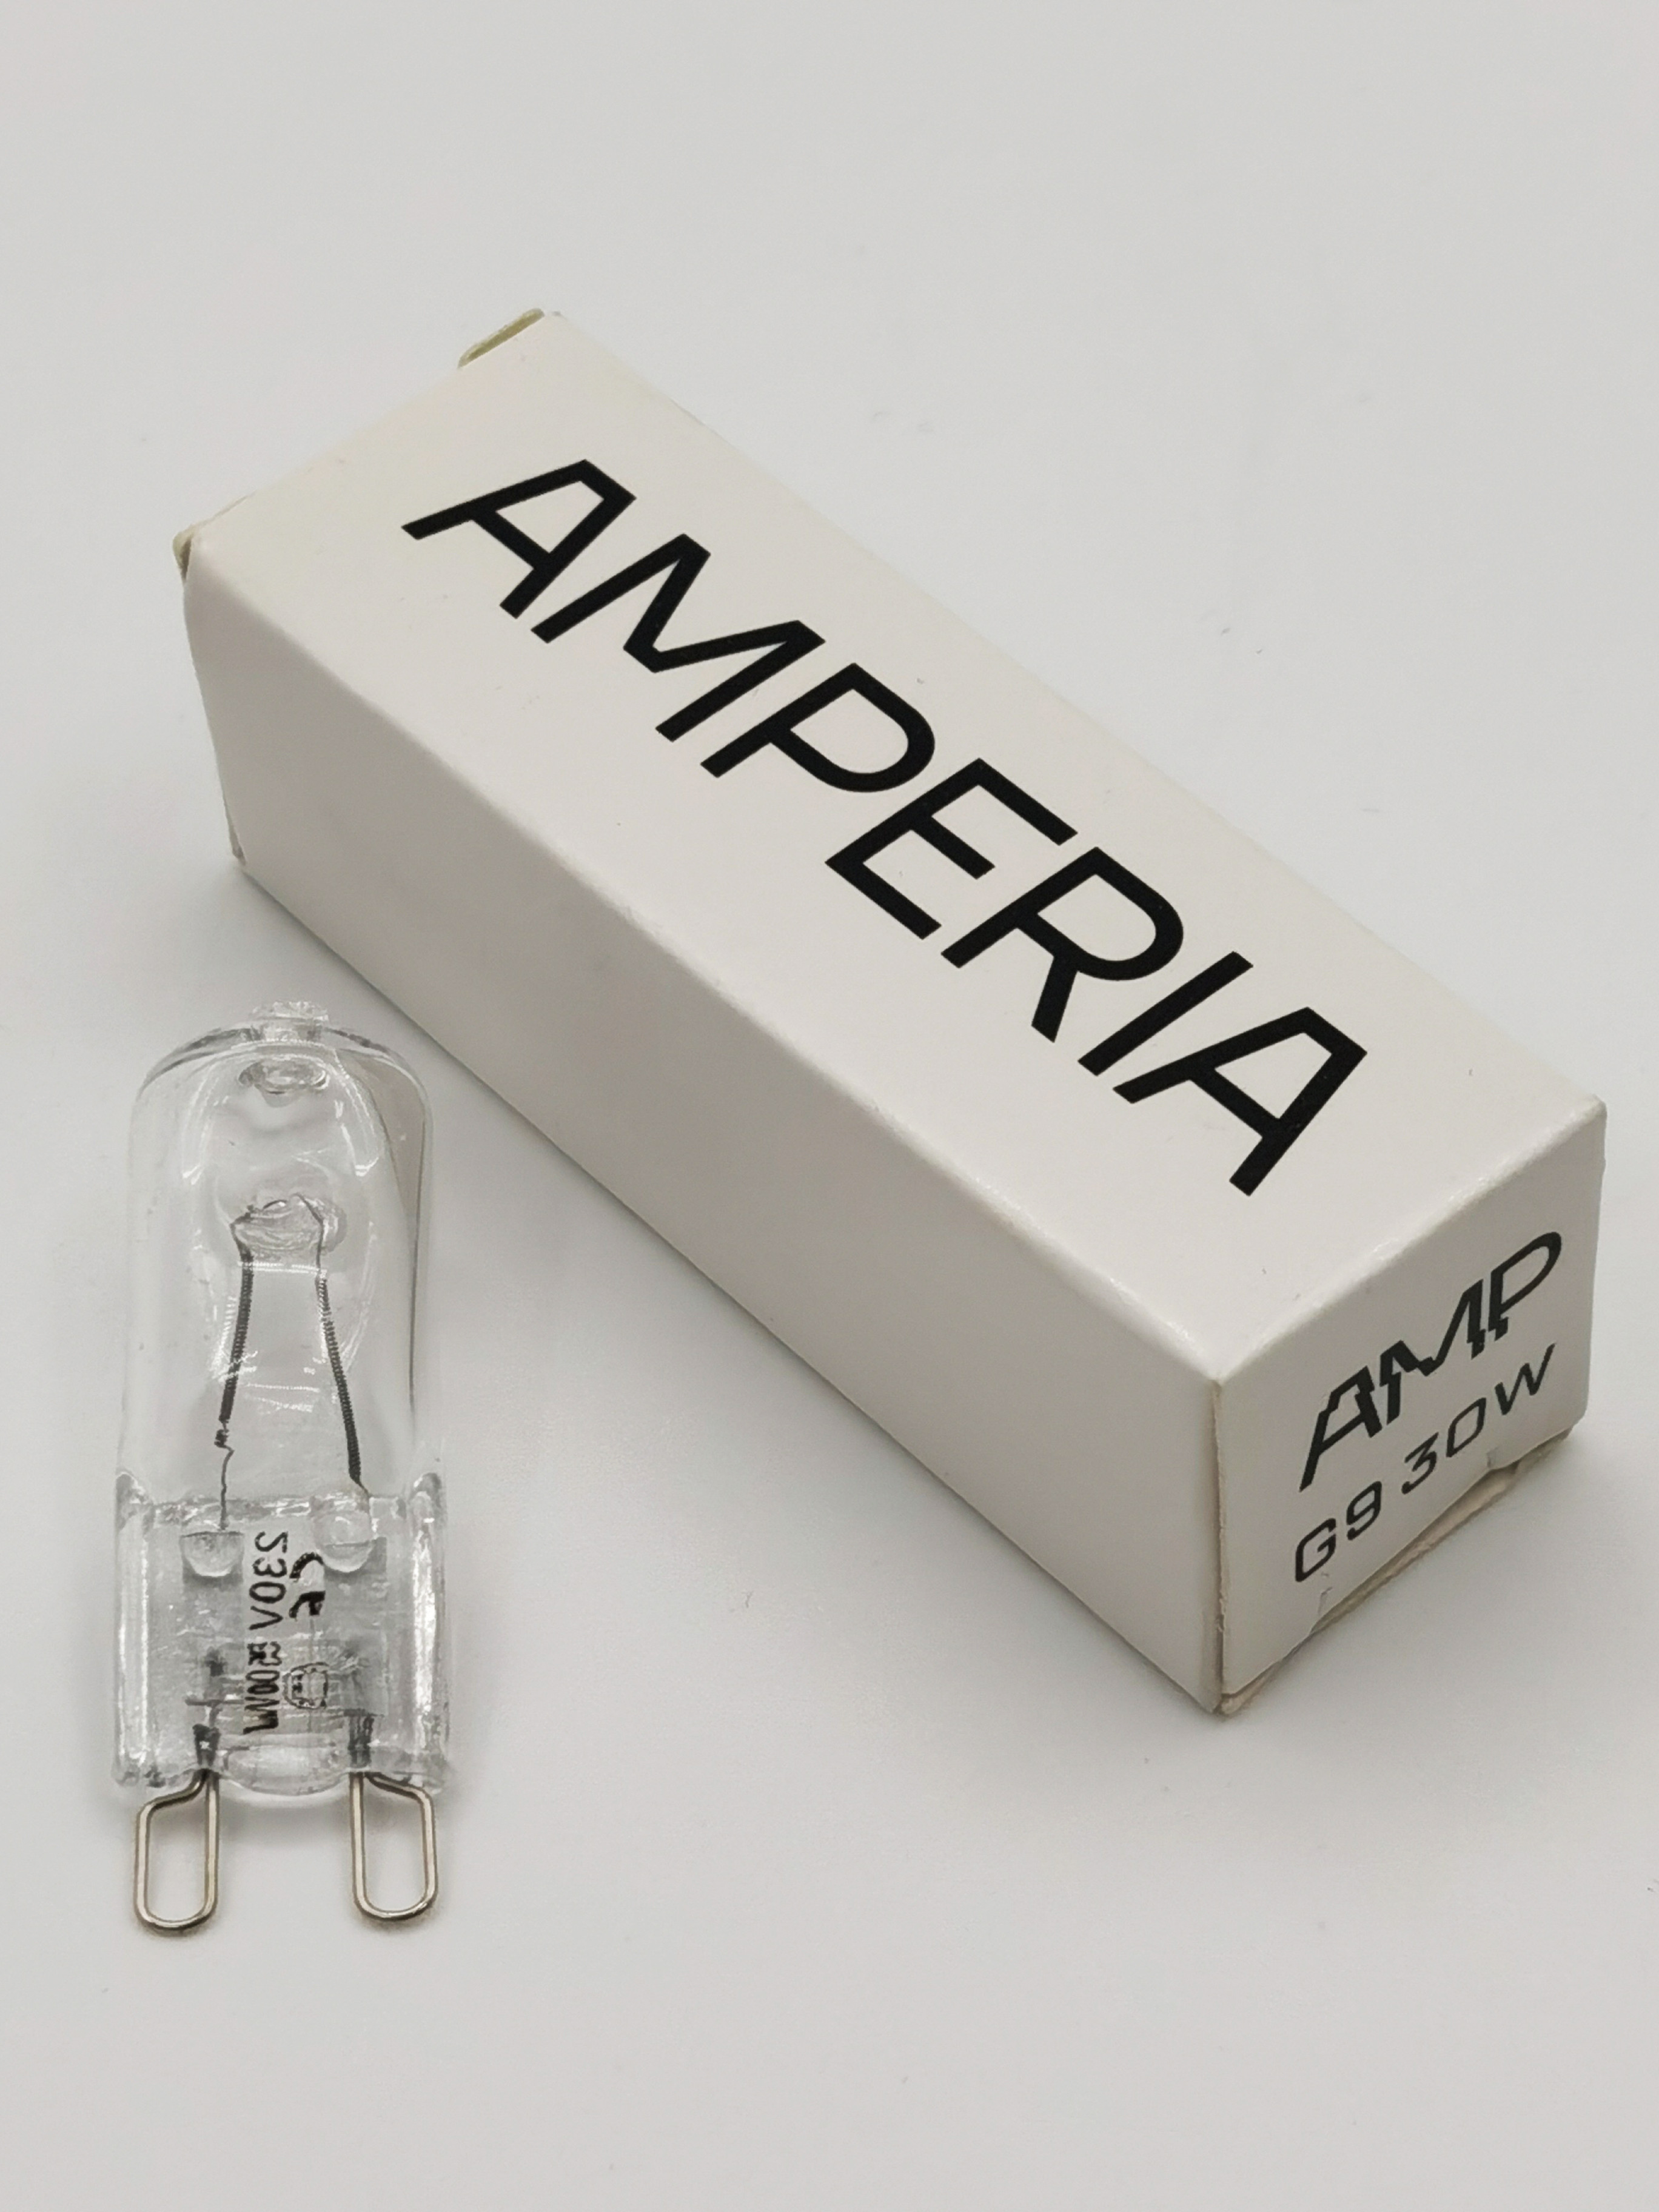 Галогенная лампочка для Лава лампы Amperia 30w G9